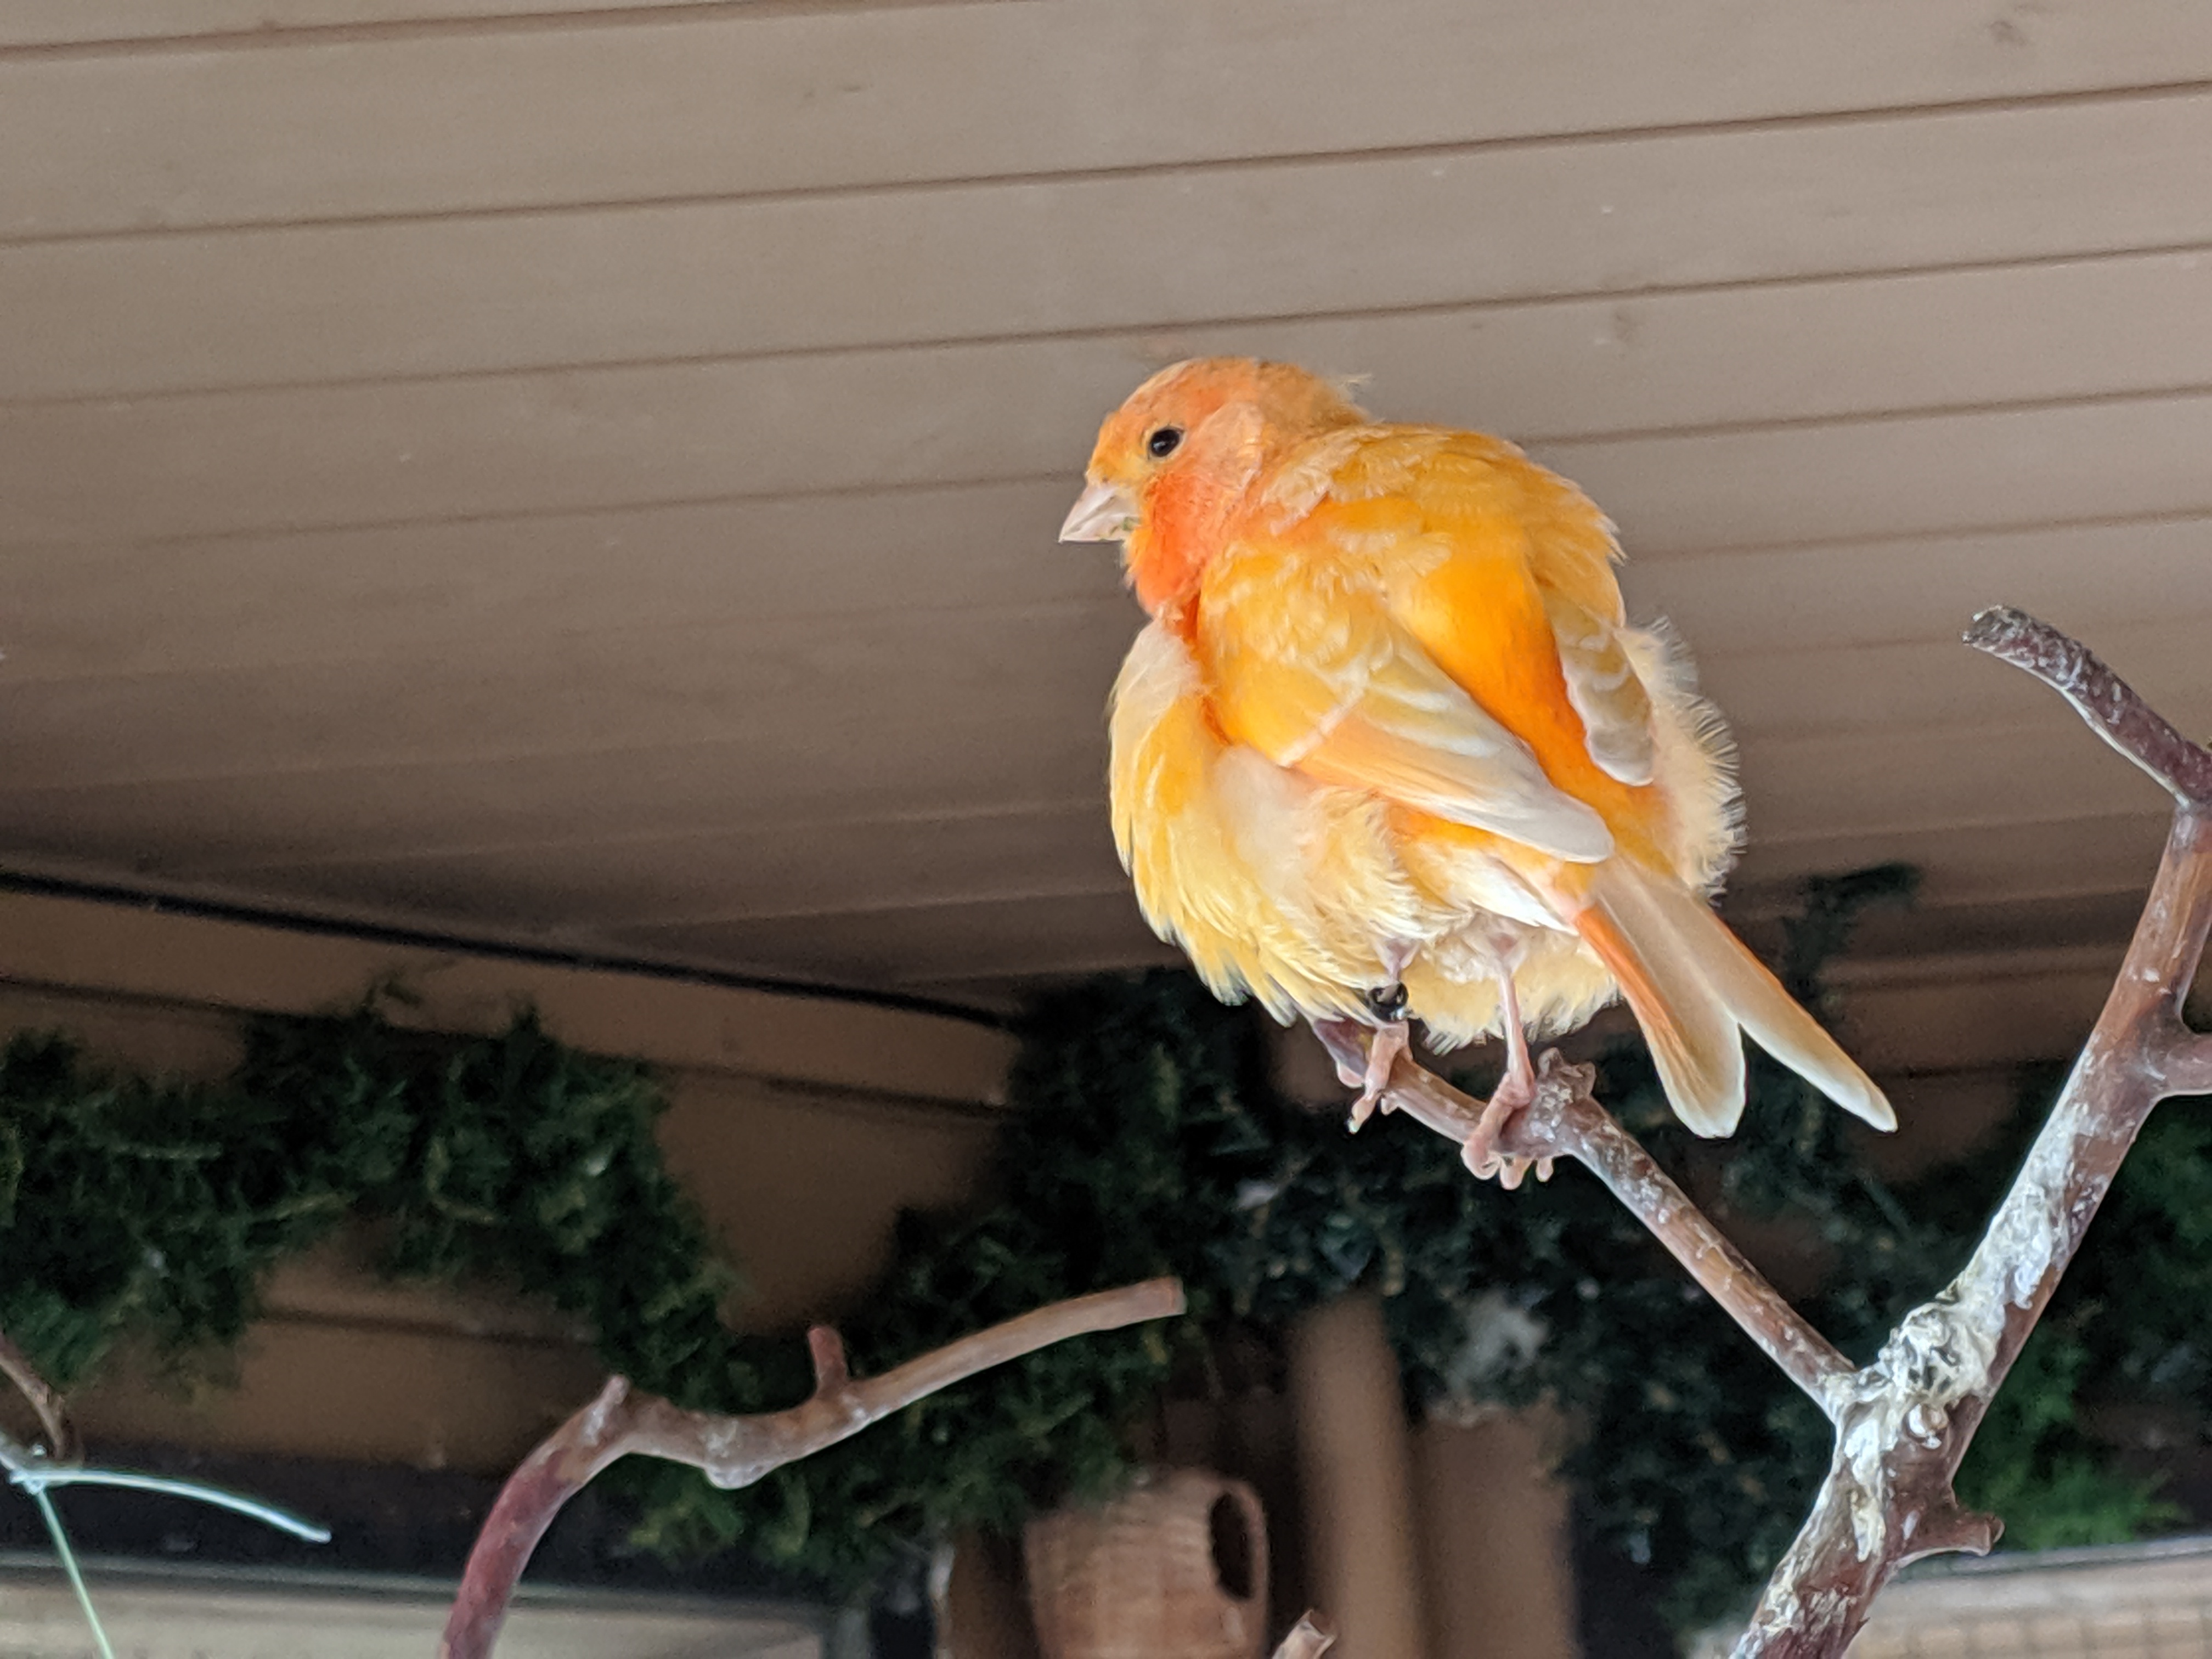 Types of birds with orange beaks